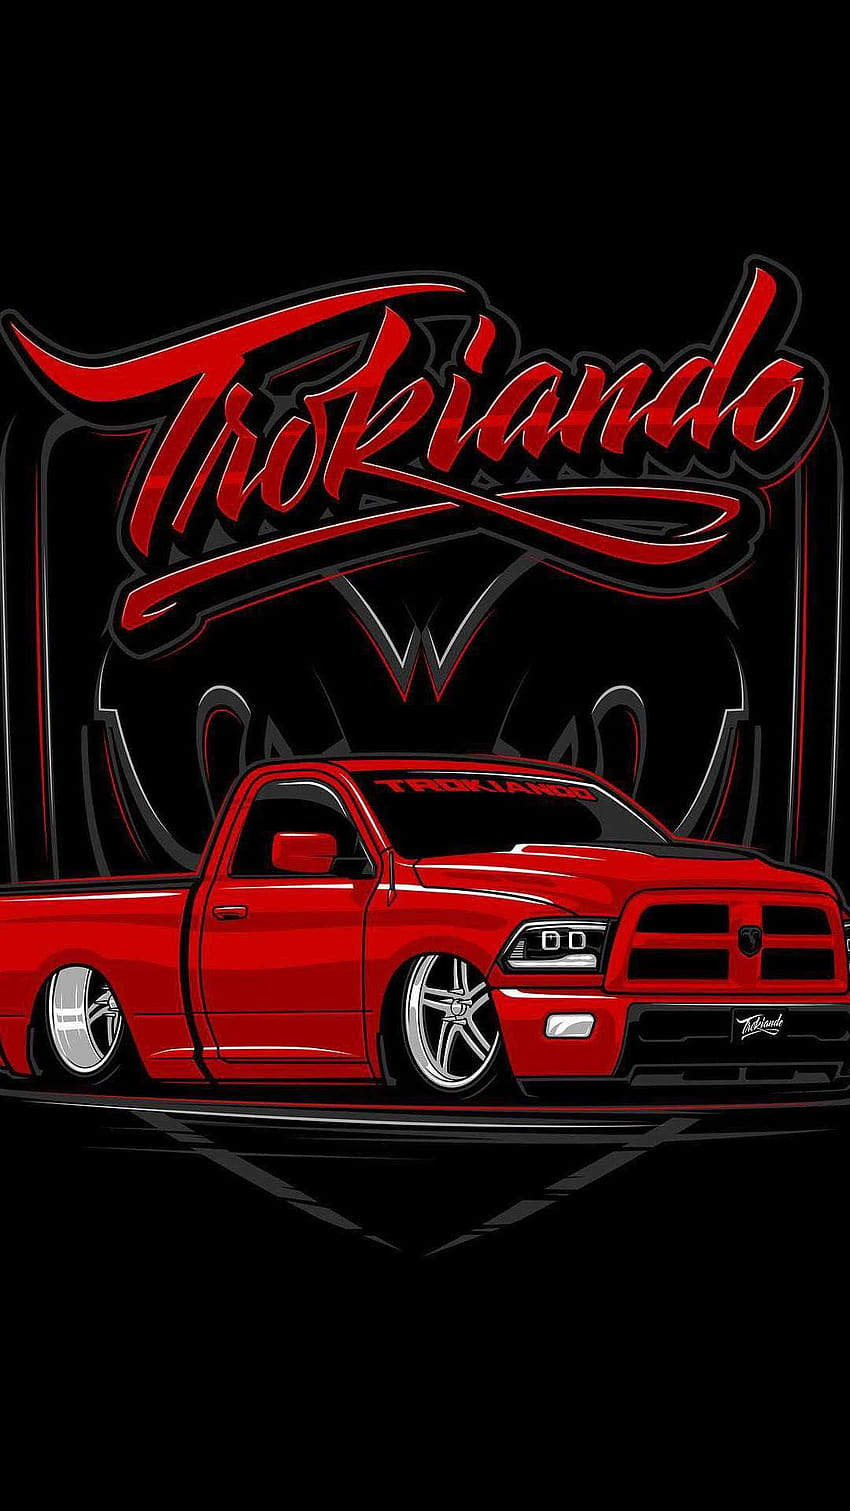 Trokiando Odkryj więcej Chevy Truck, Takuache, Takuache Truck, Takuache Trucks, Trokiando. https…, meksykańska ciężarówka Tapeta na telefon HD